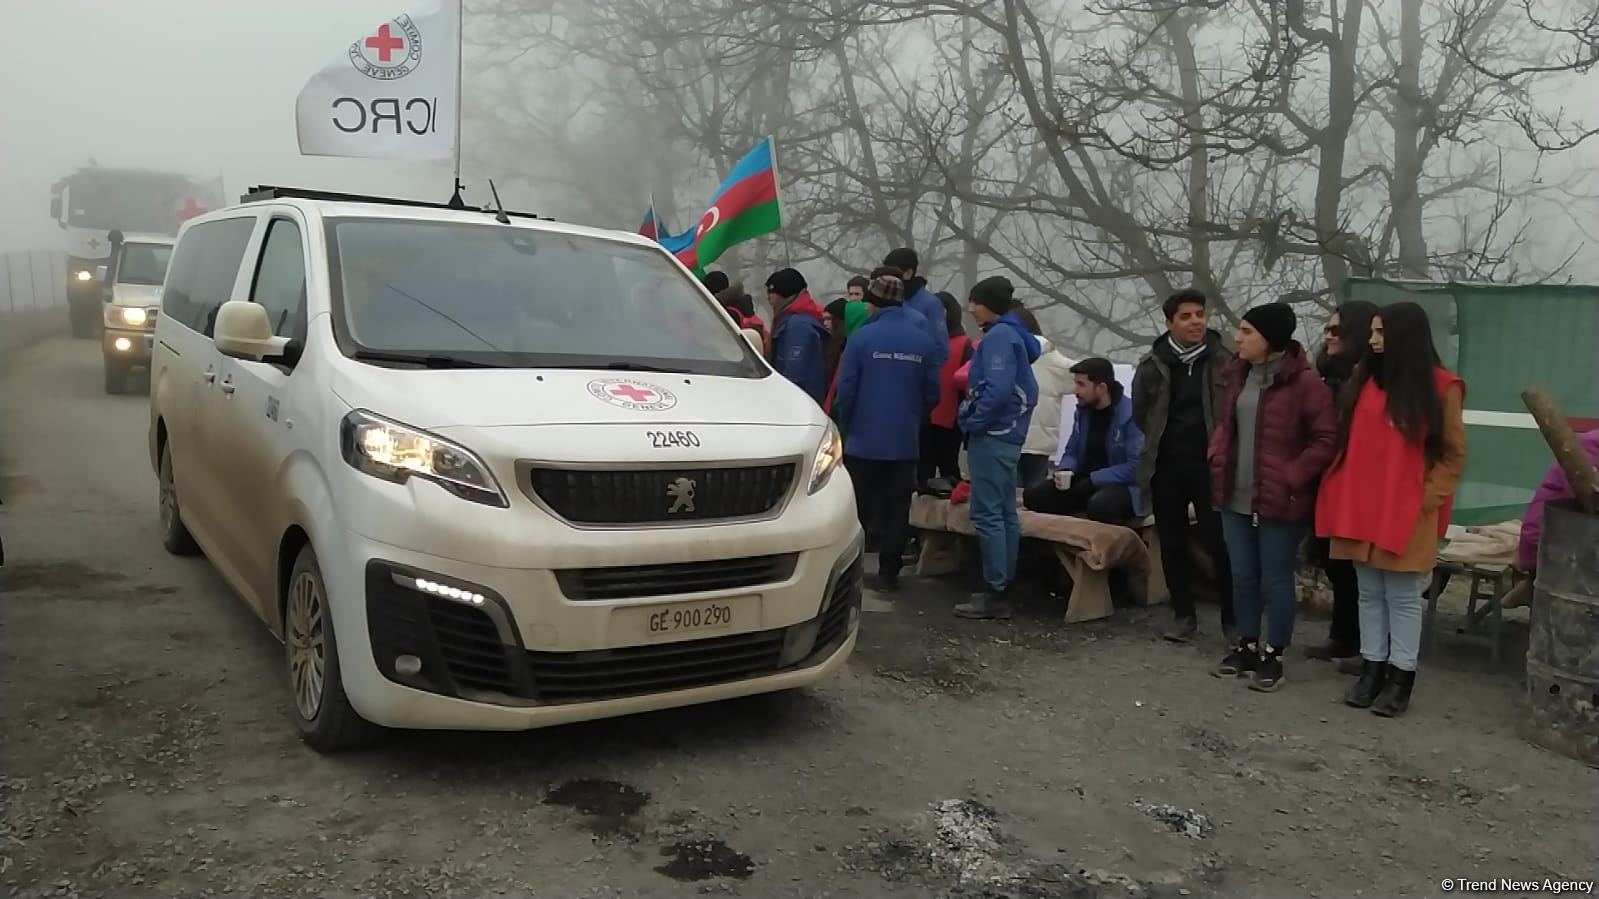 По Лачинской дороге беспрепятственно проехали семь автомобилей Красного Креста (ФОТО)